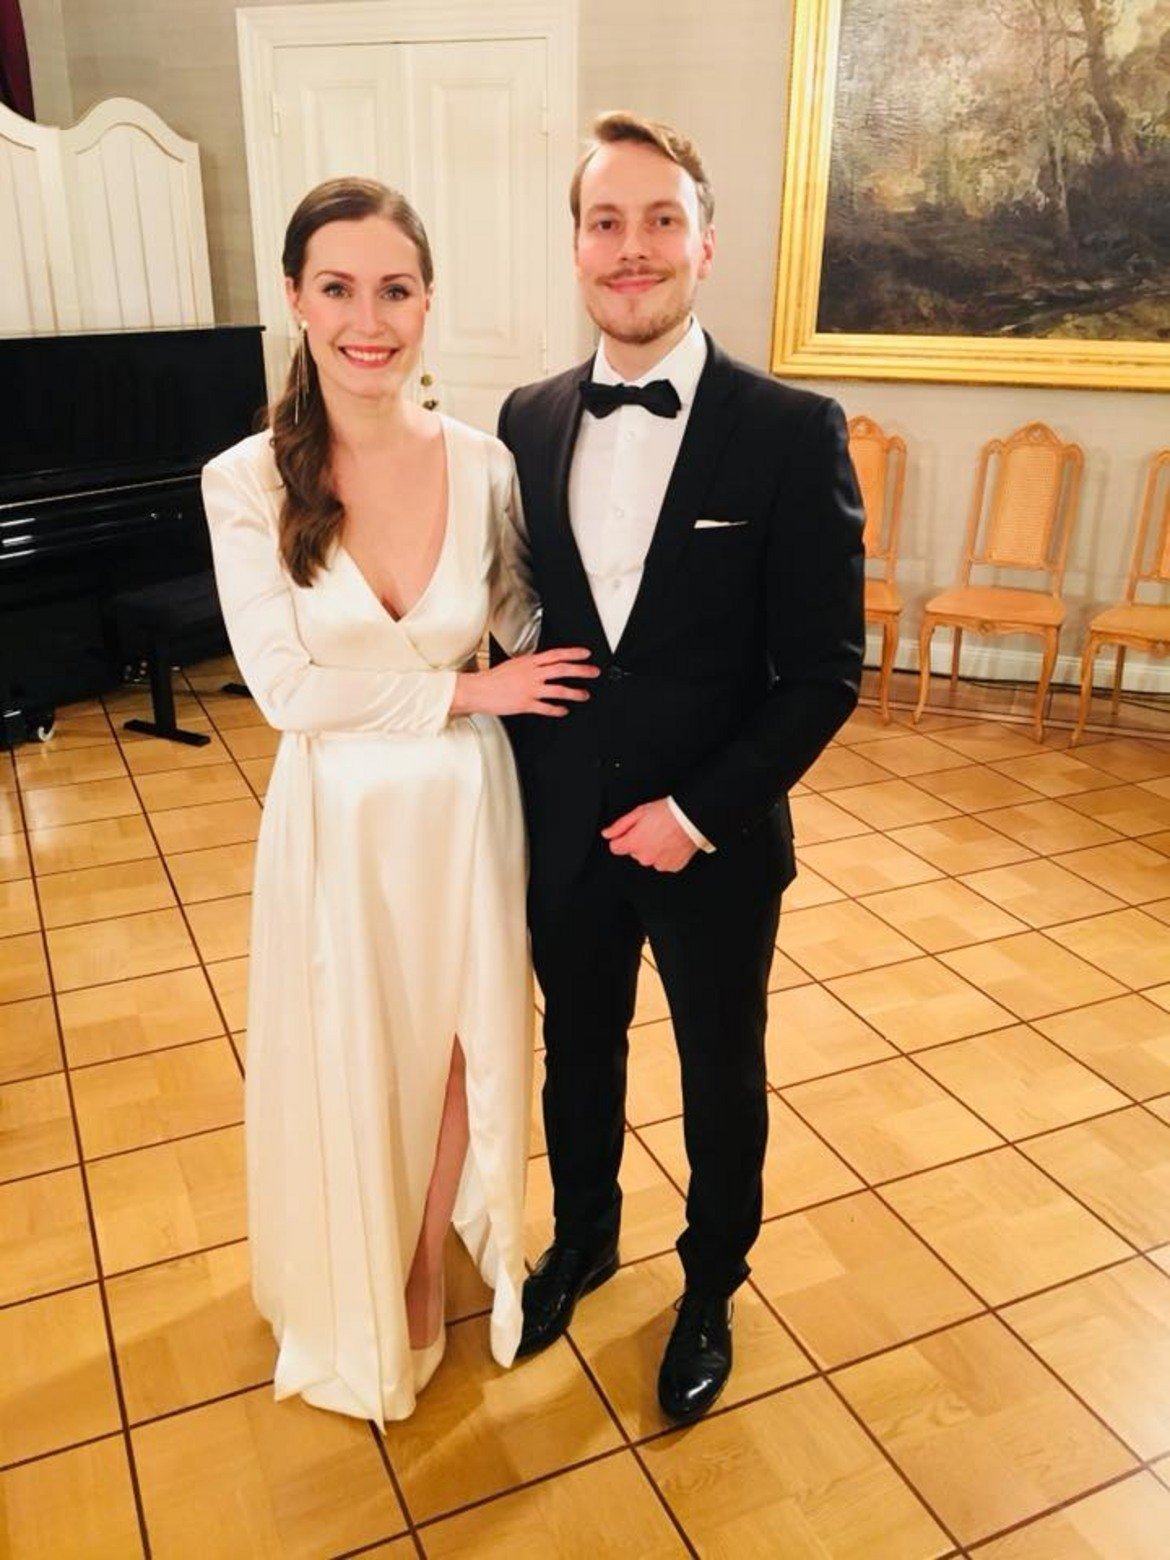 Омъжена е за Маркус Райкьонен, от когото има дъщеричка - Ема, родена през 2018 година